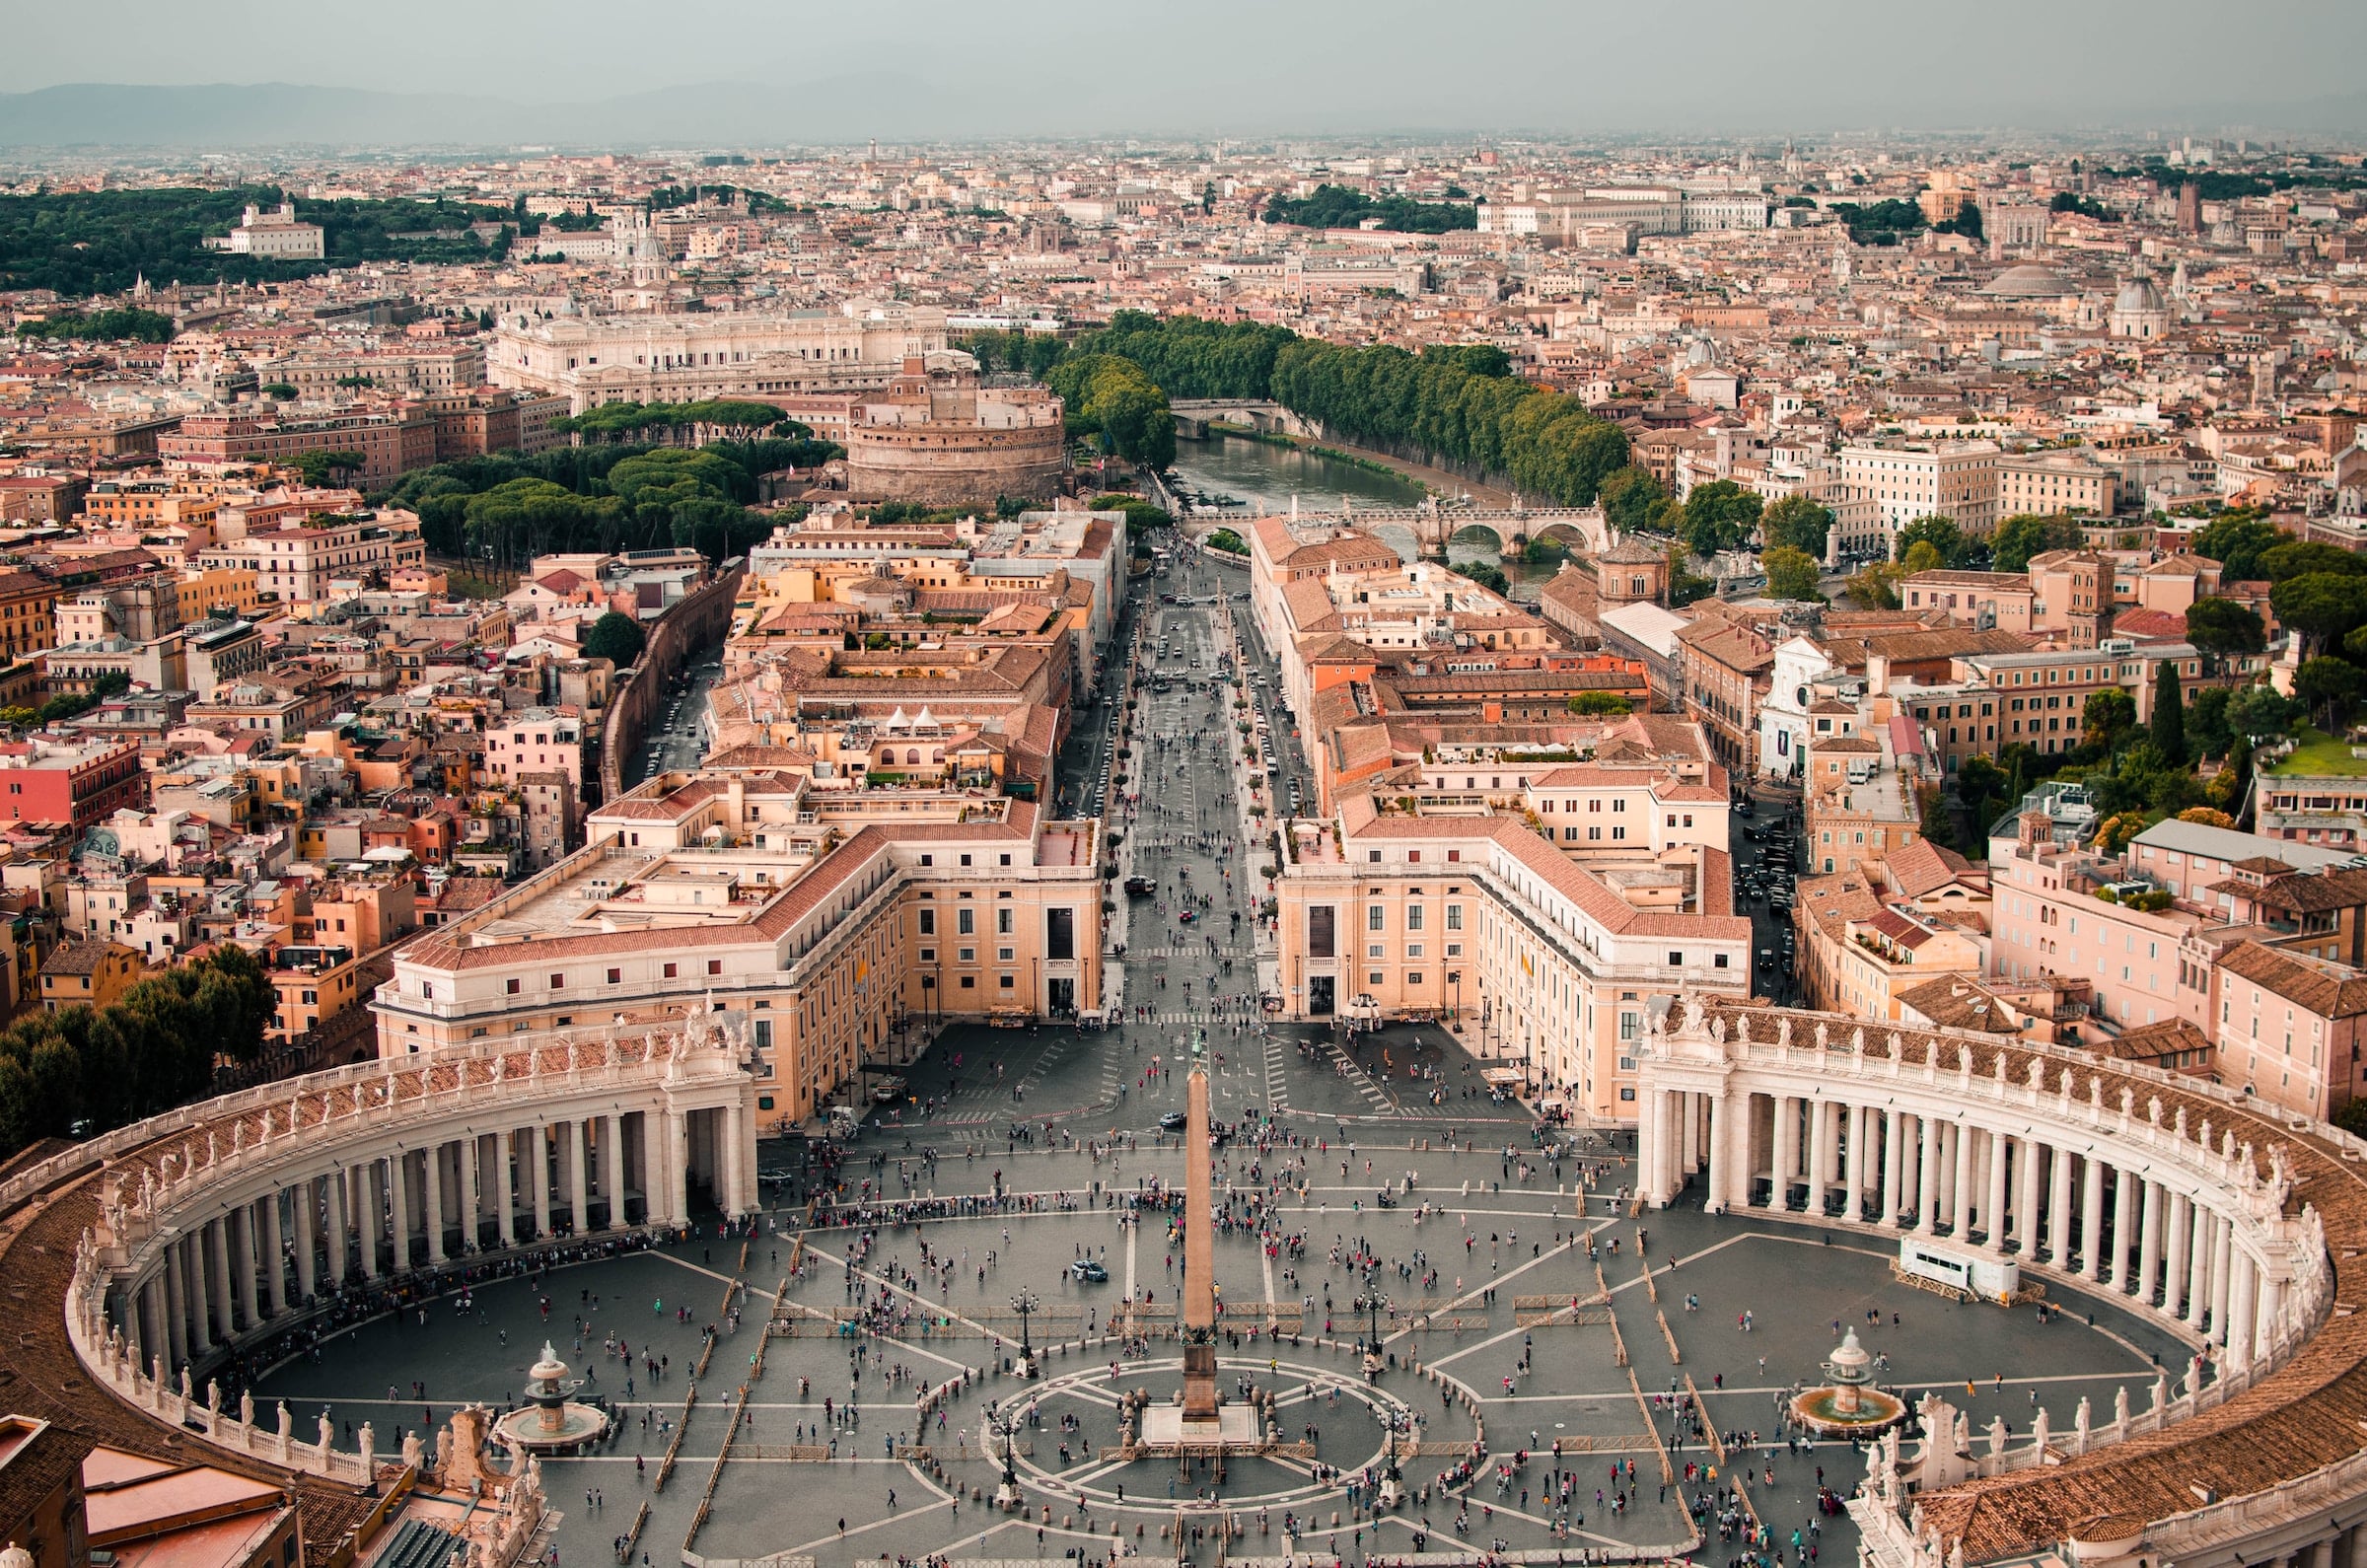 Il paese più piccolo del mondo in termini di superficie è la Città del Vaticano